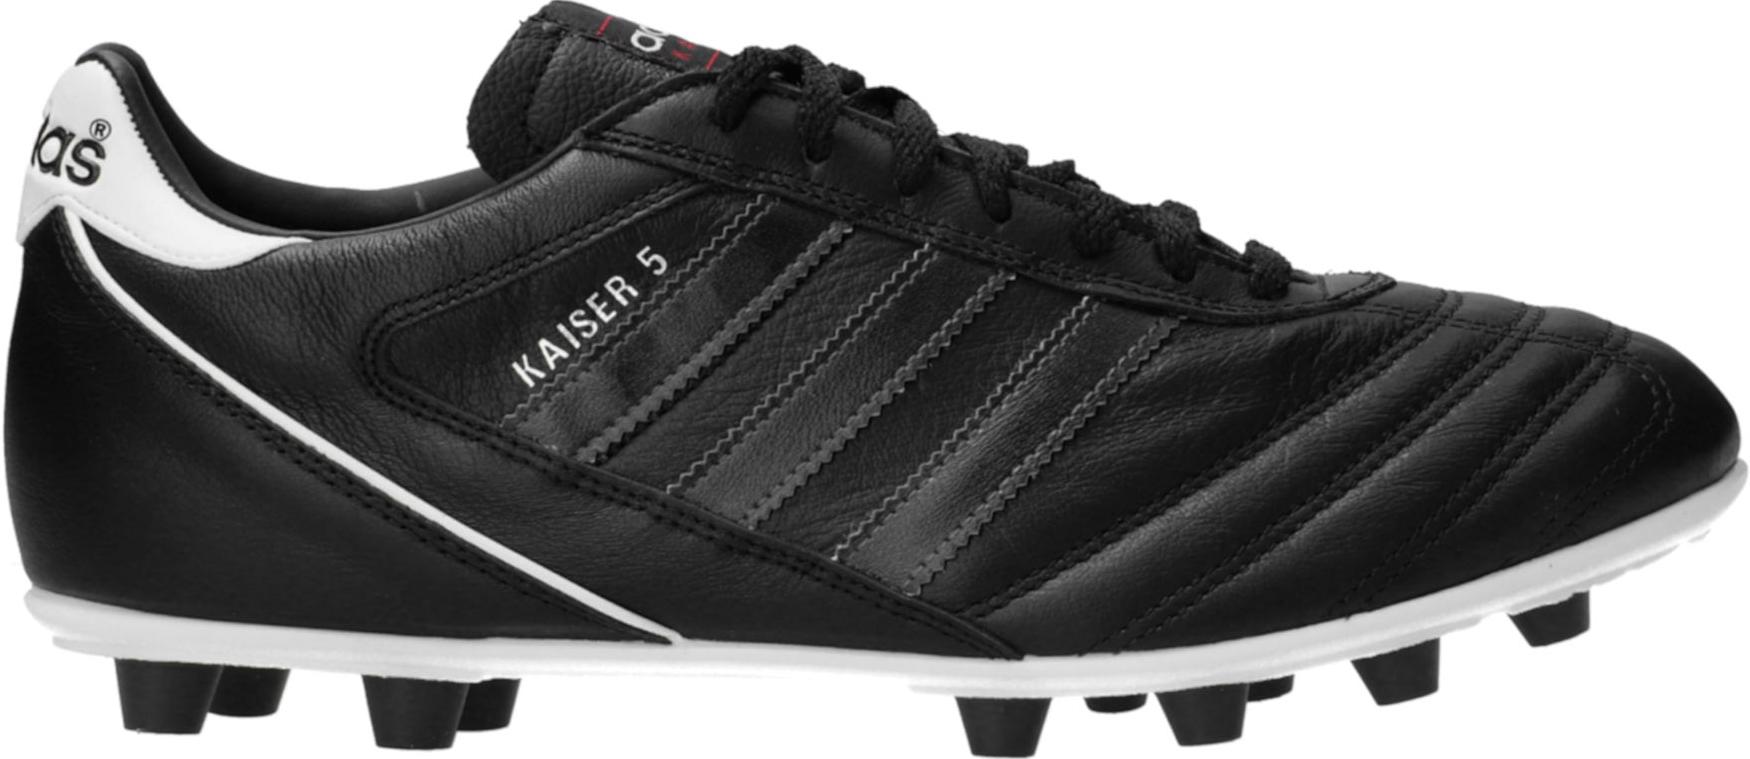 Chaussures de football adidas Kaiser 5 Liga FG Black Stripes Schwarz